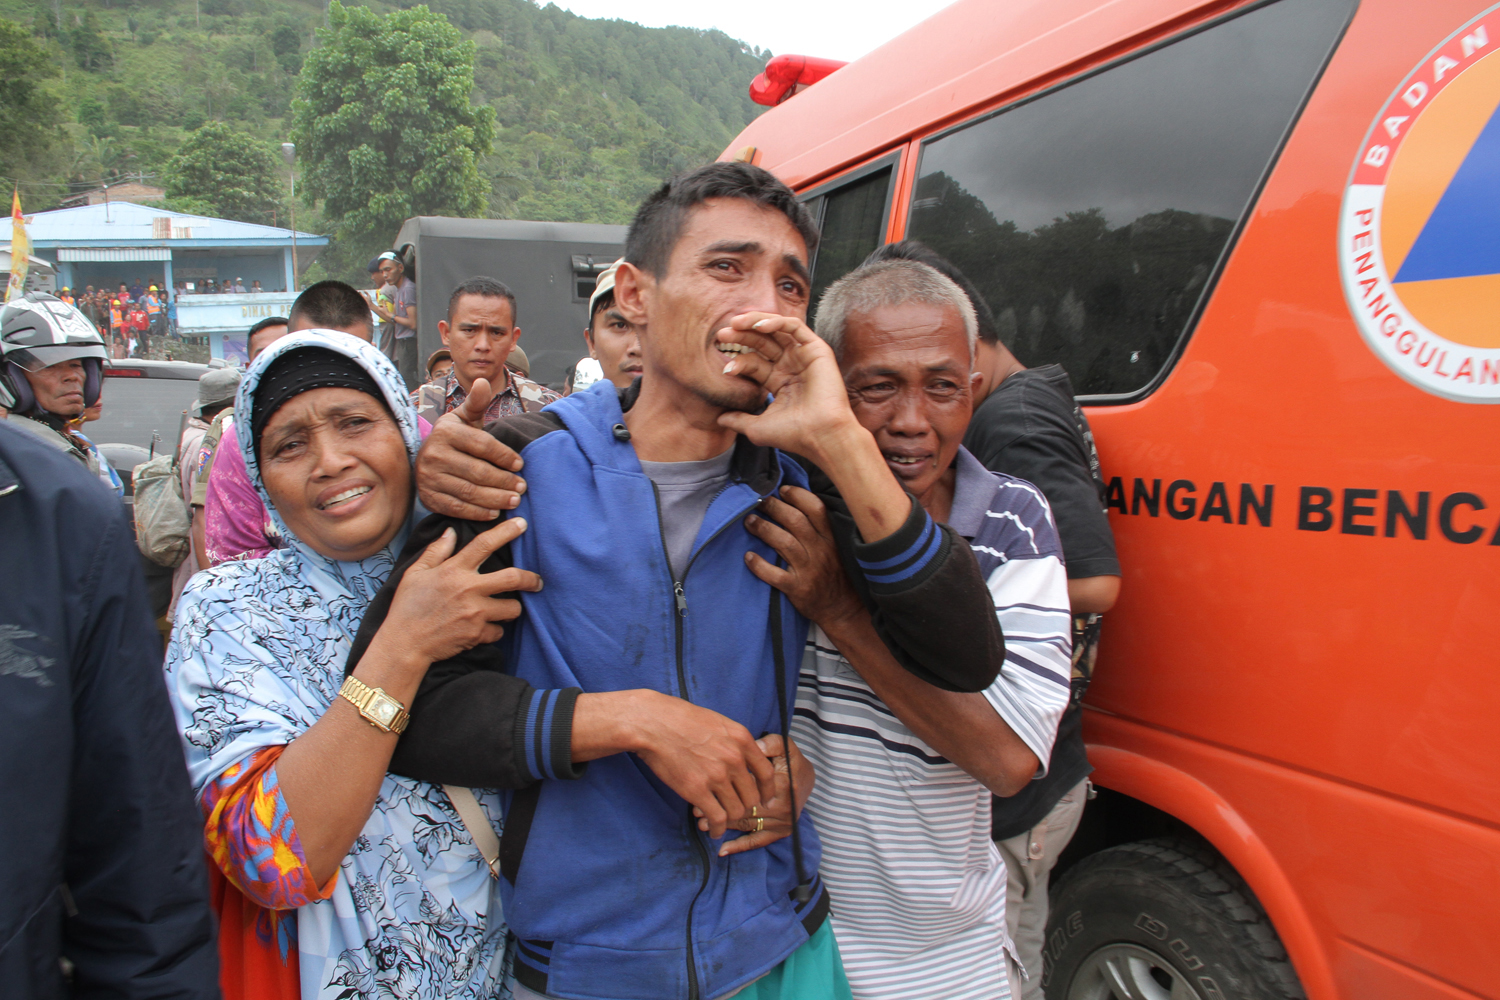 حزن شديد بين أقارب ضحايا غرق عبارة فى إندونيسيا